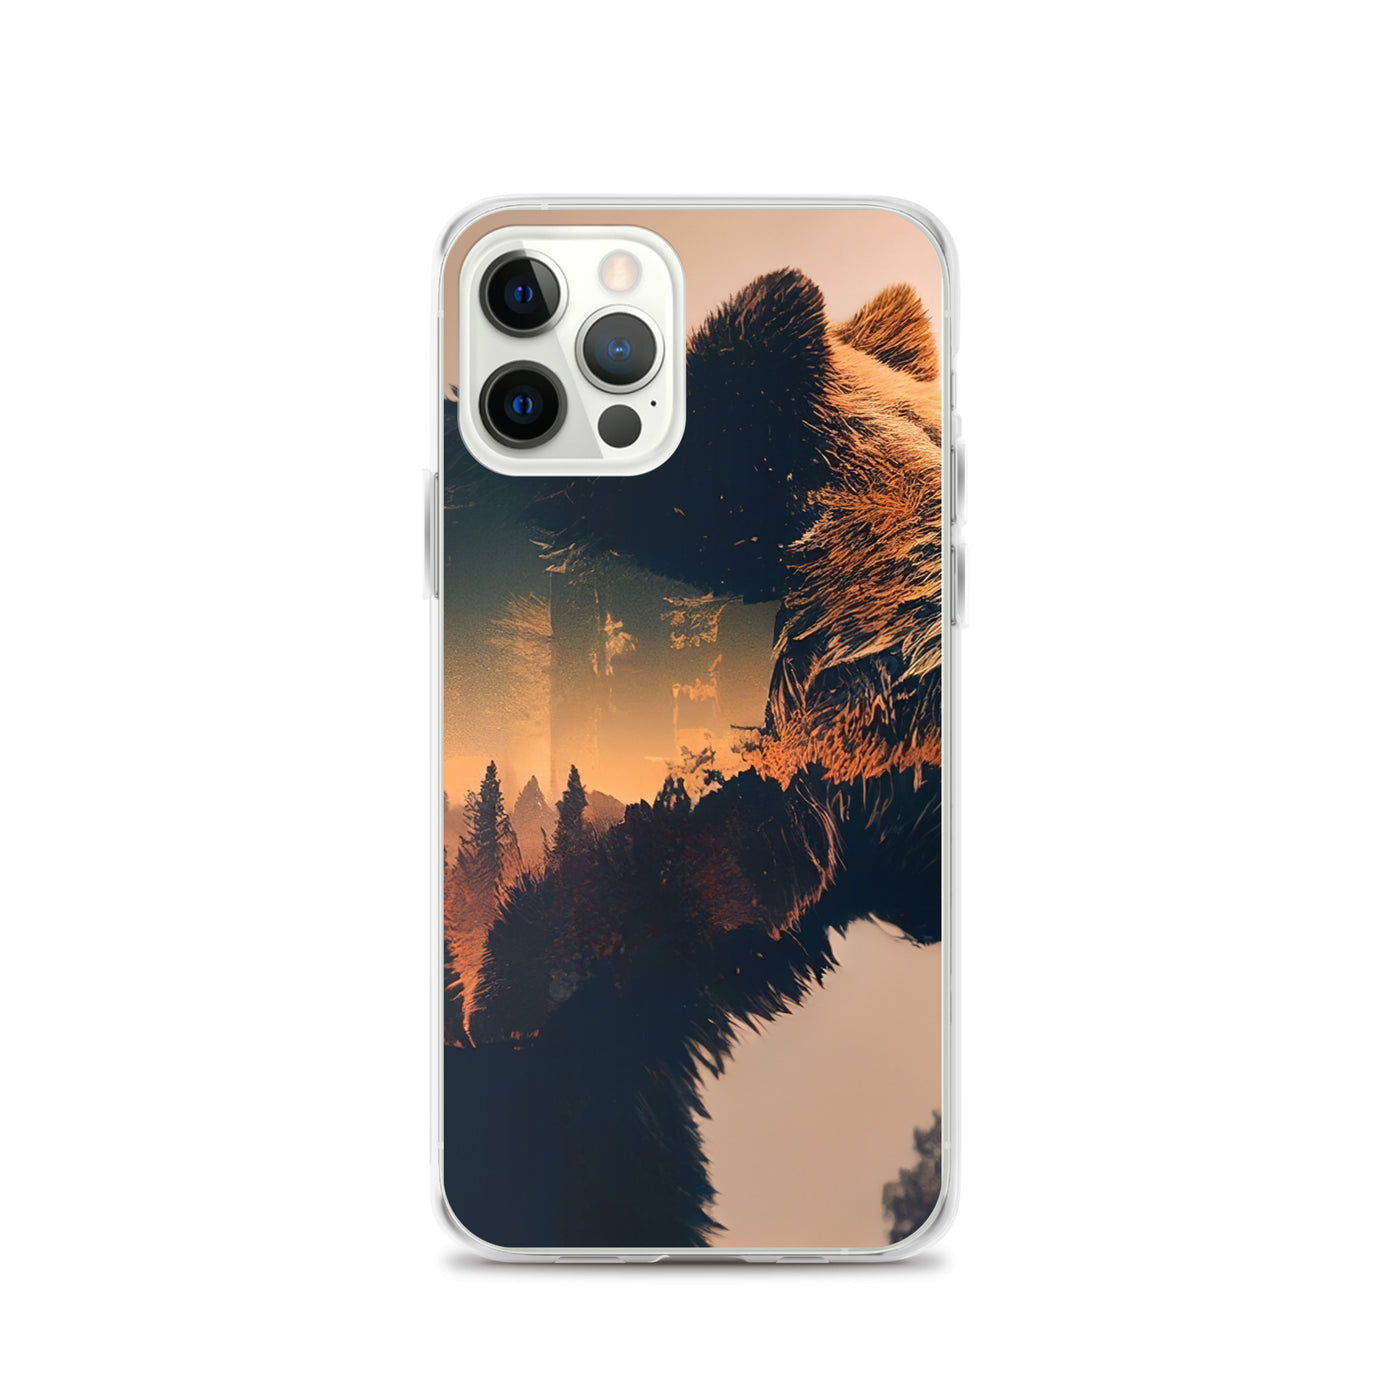 Bär und Bäume Illustration - iPhone Schutzhülle (durchsichtig) camping xxx iPhone 12 Pro